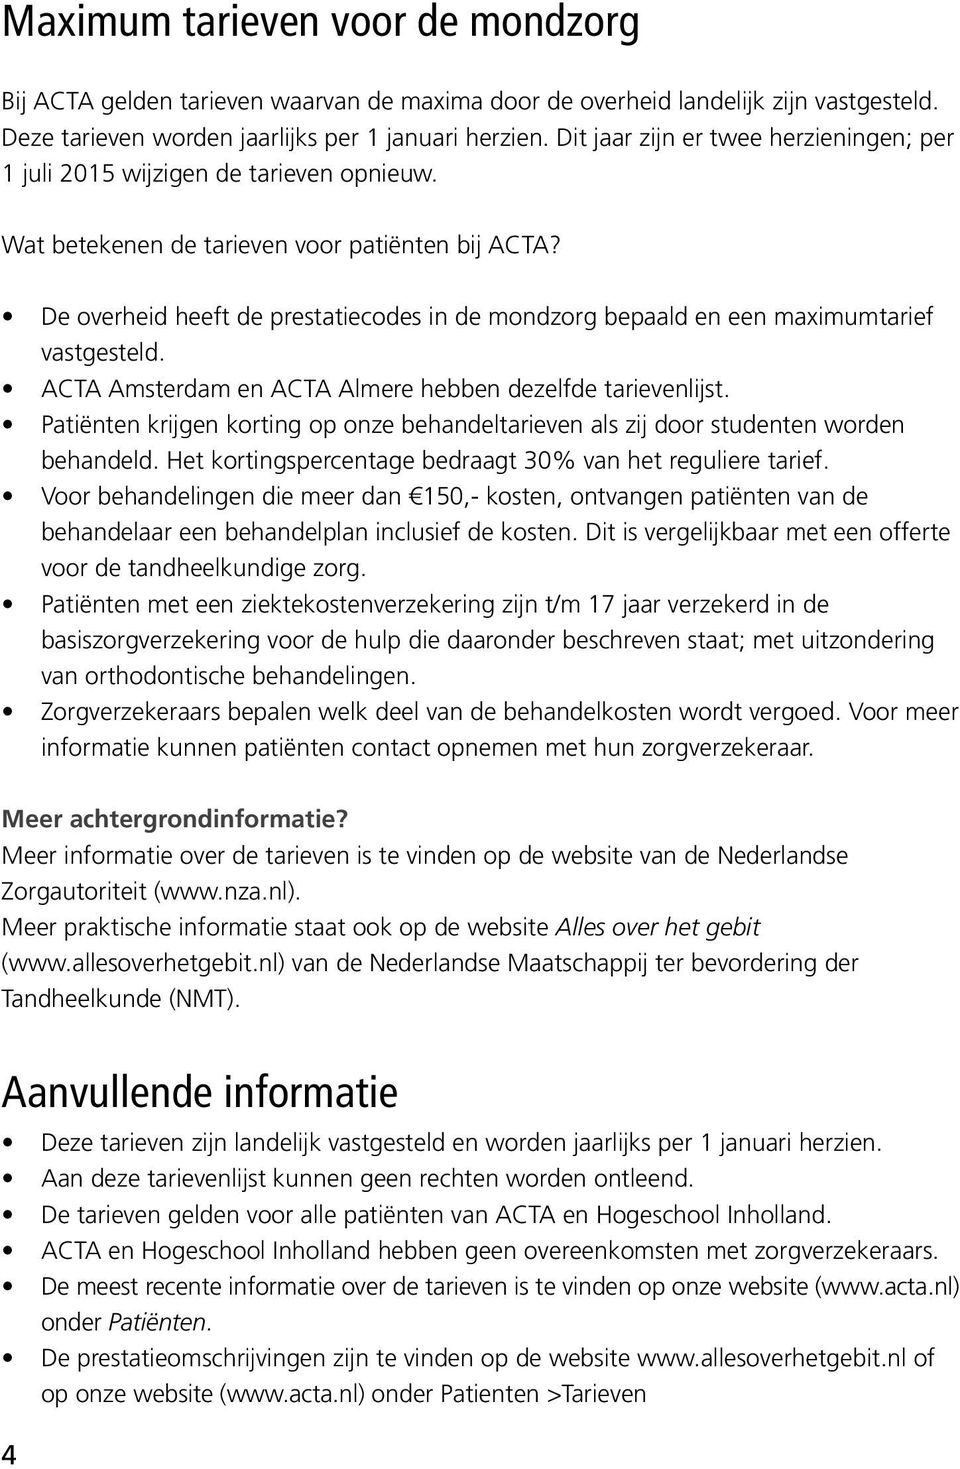 De overheid heeft de prestatiecodes in de mondzorg bepaald en een maximumtarief vastgesteld. ACTA Amsterdam en ACTA Almere hebben dezelfde tarievenlijst.